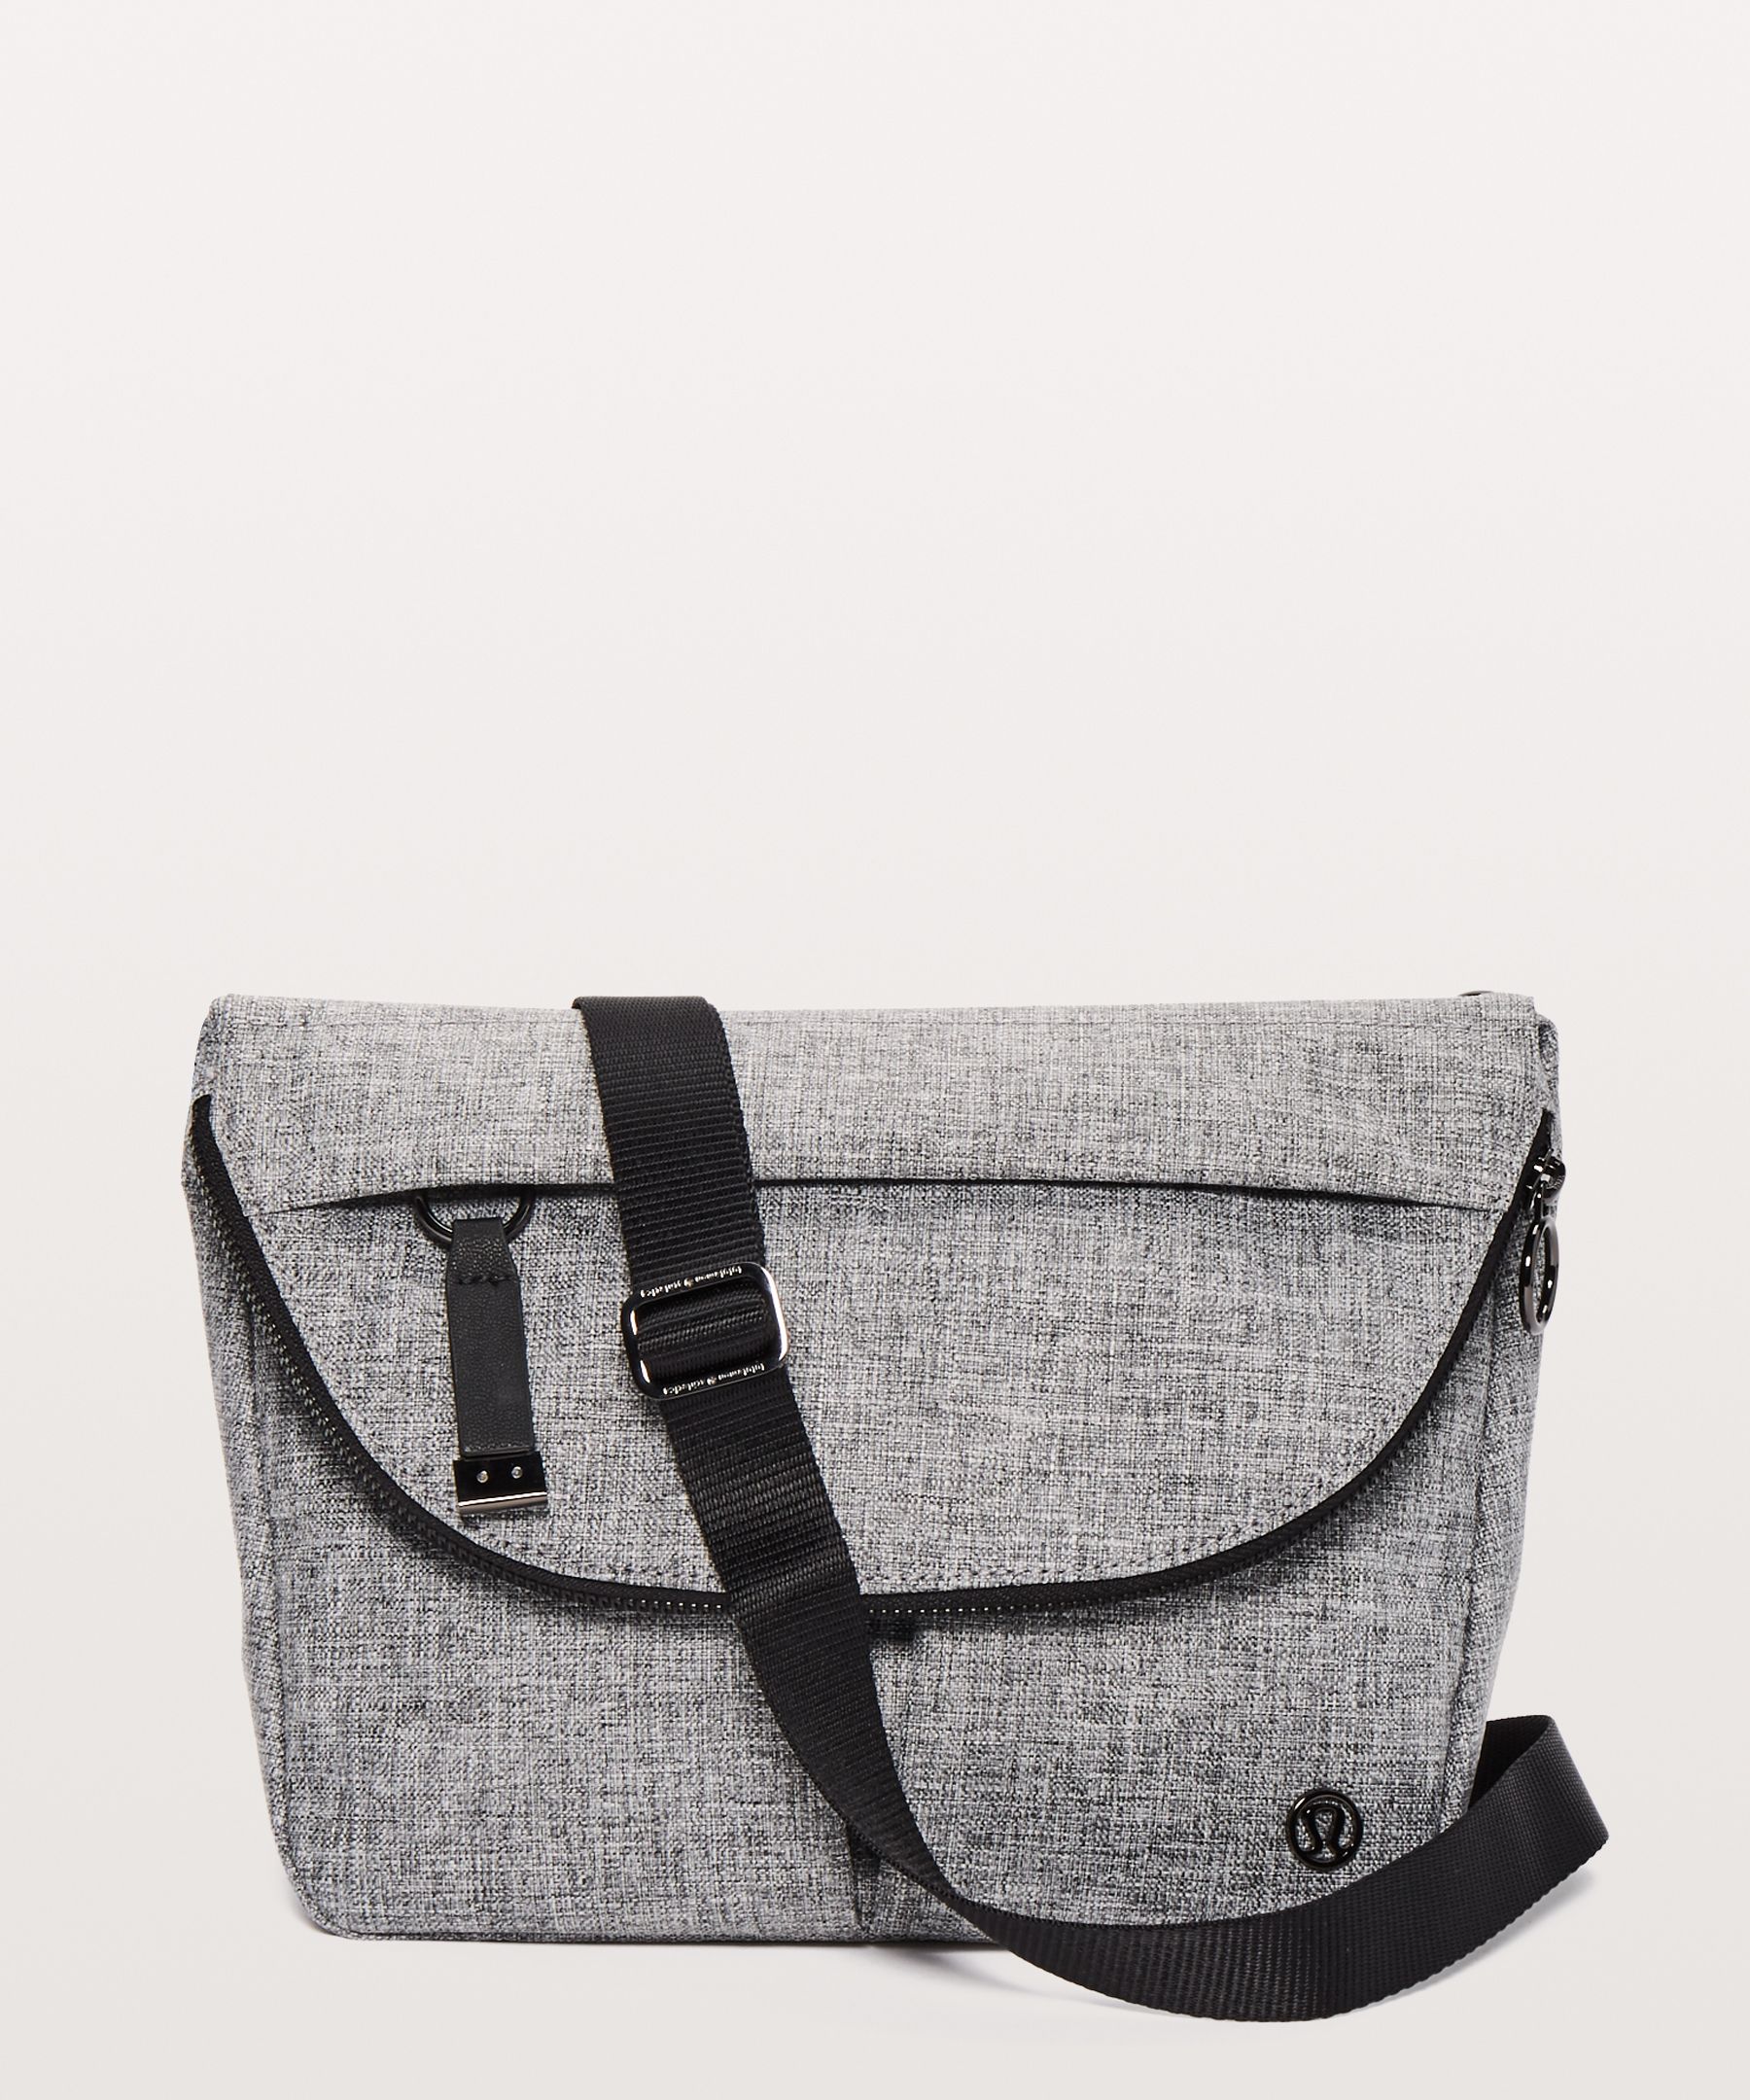 lululemon grey bag